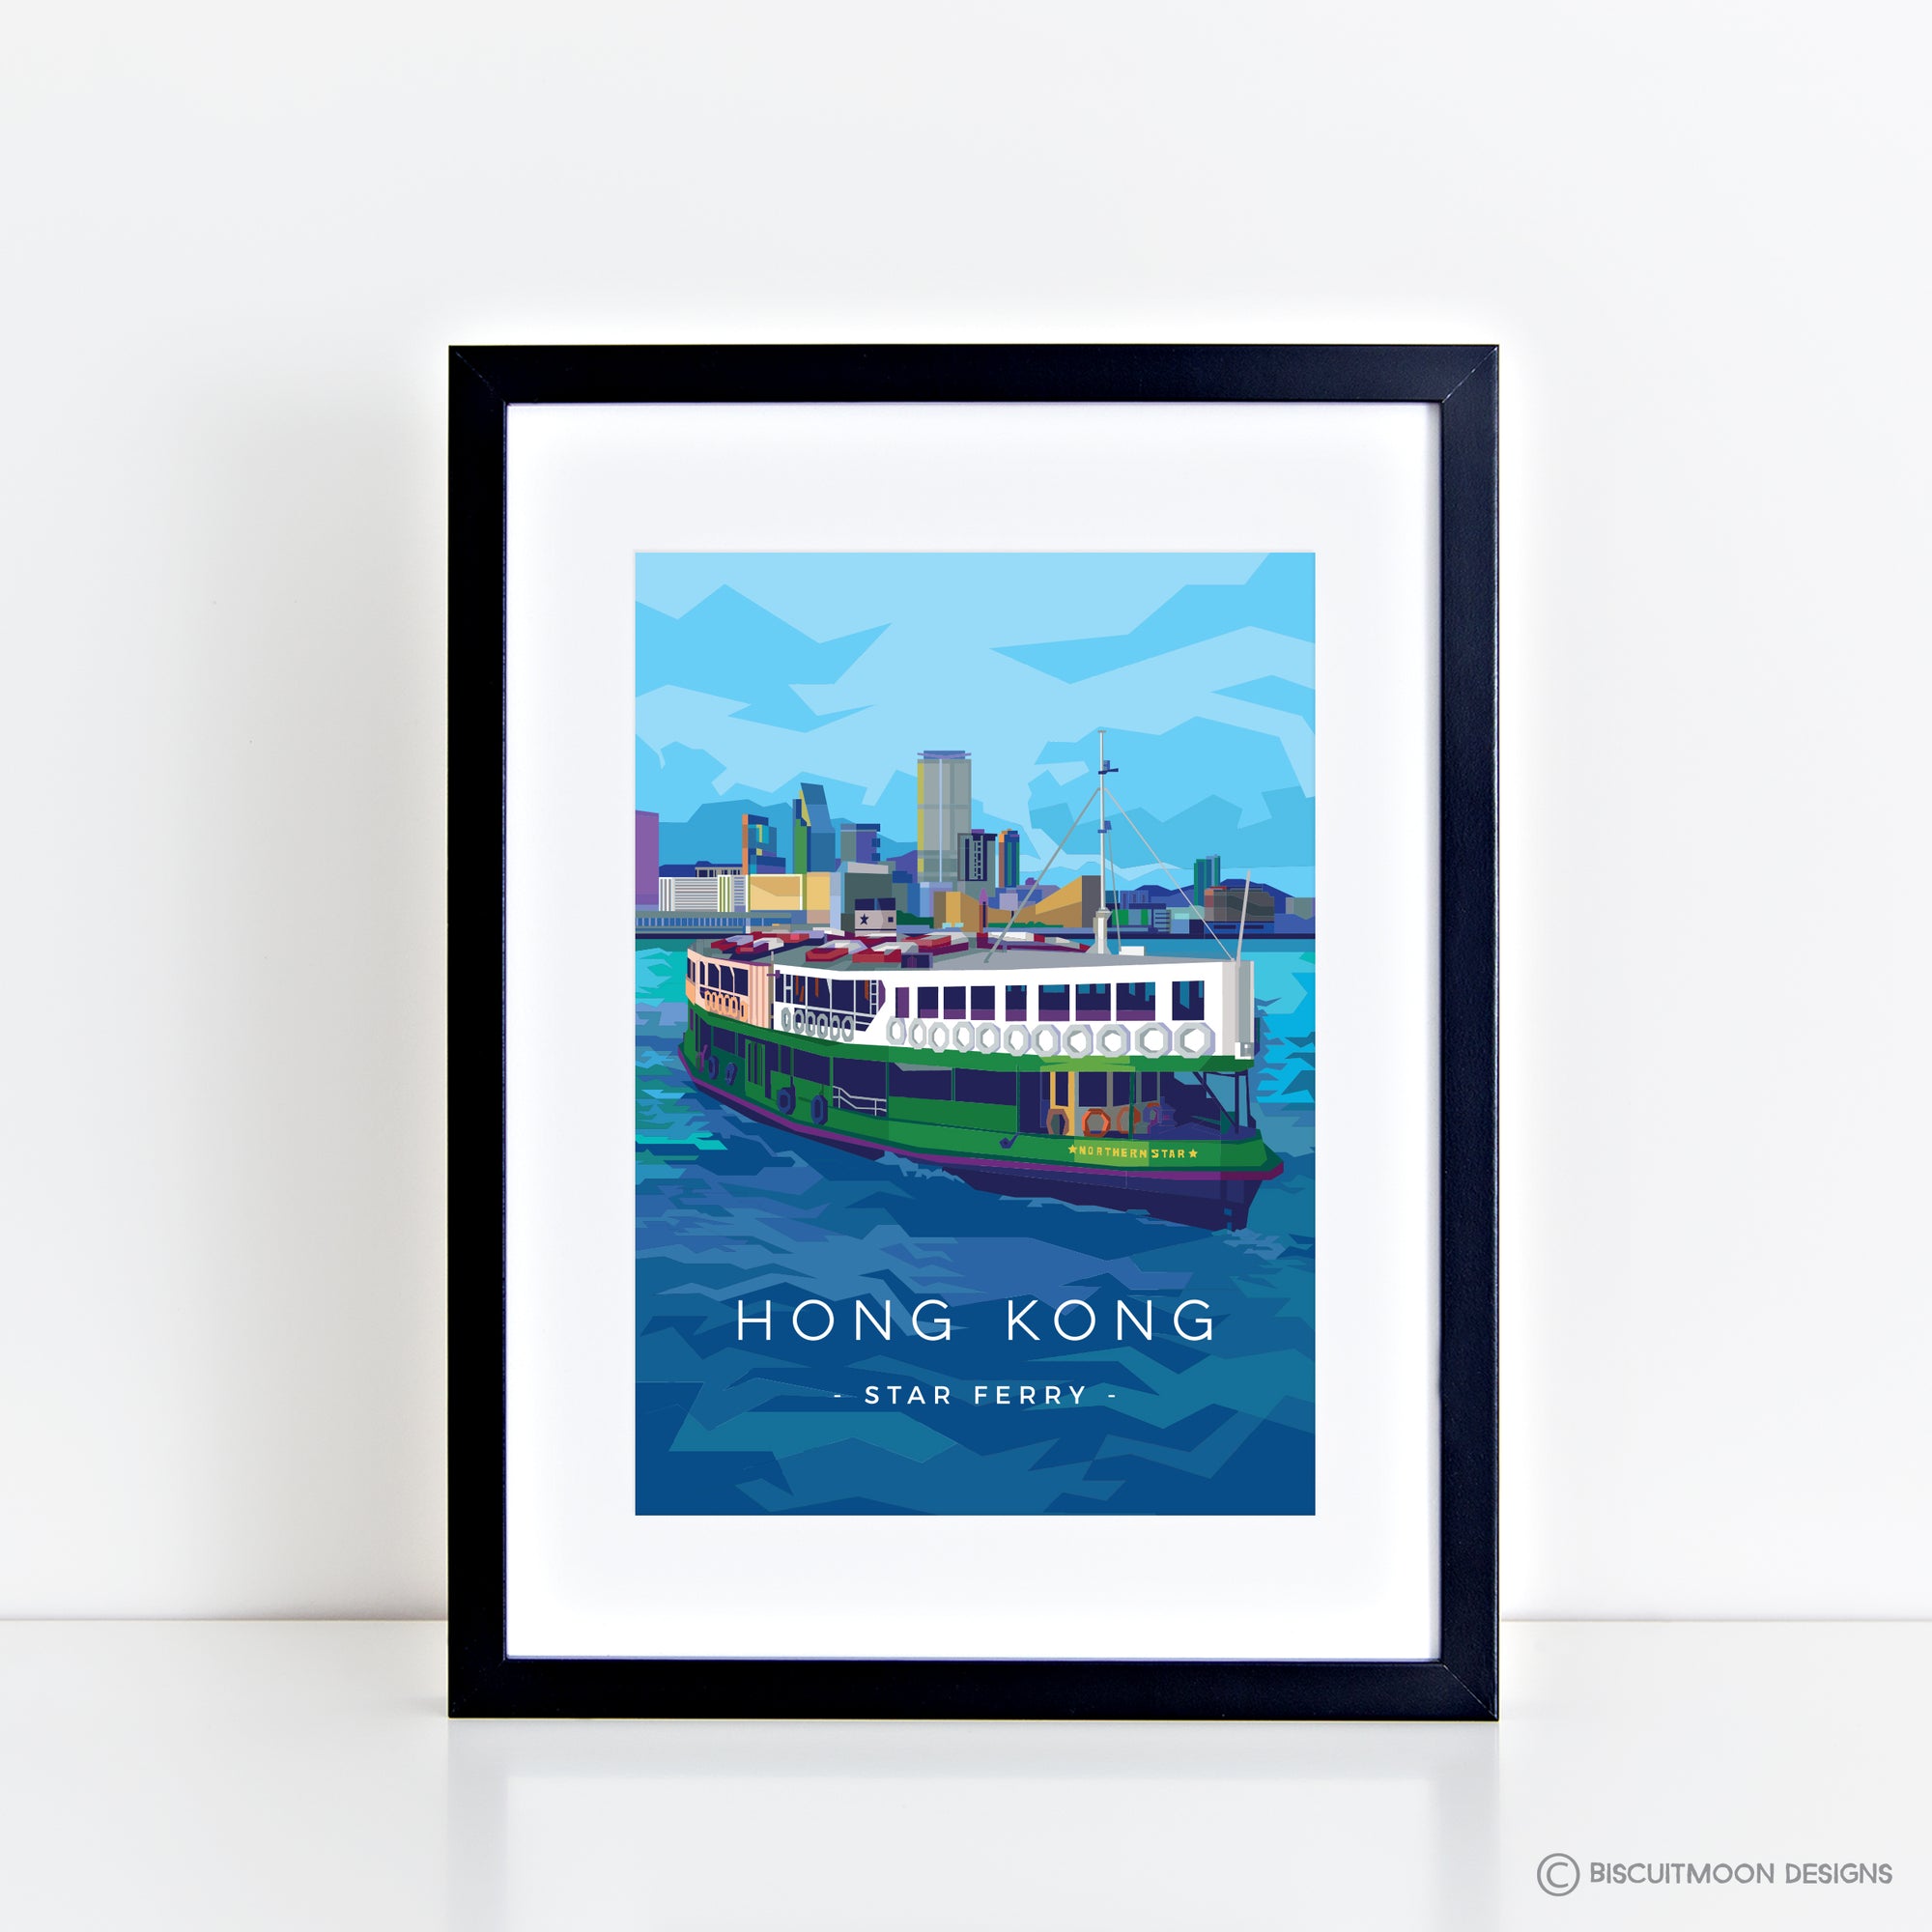 Hong Kong Travel Print - Star Ferry